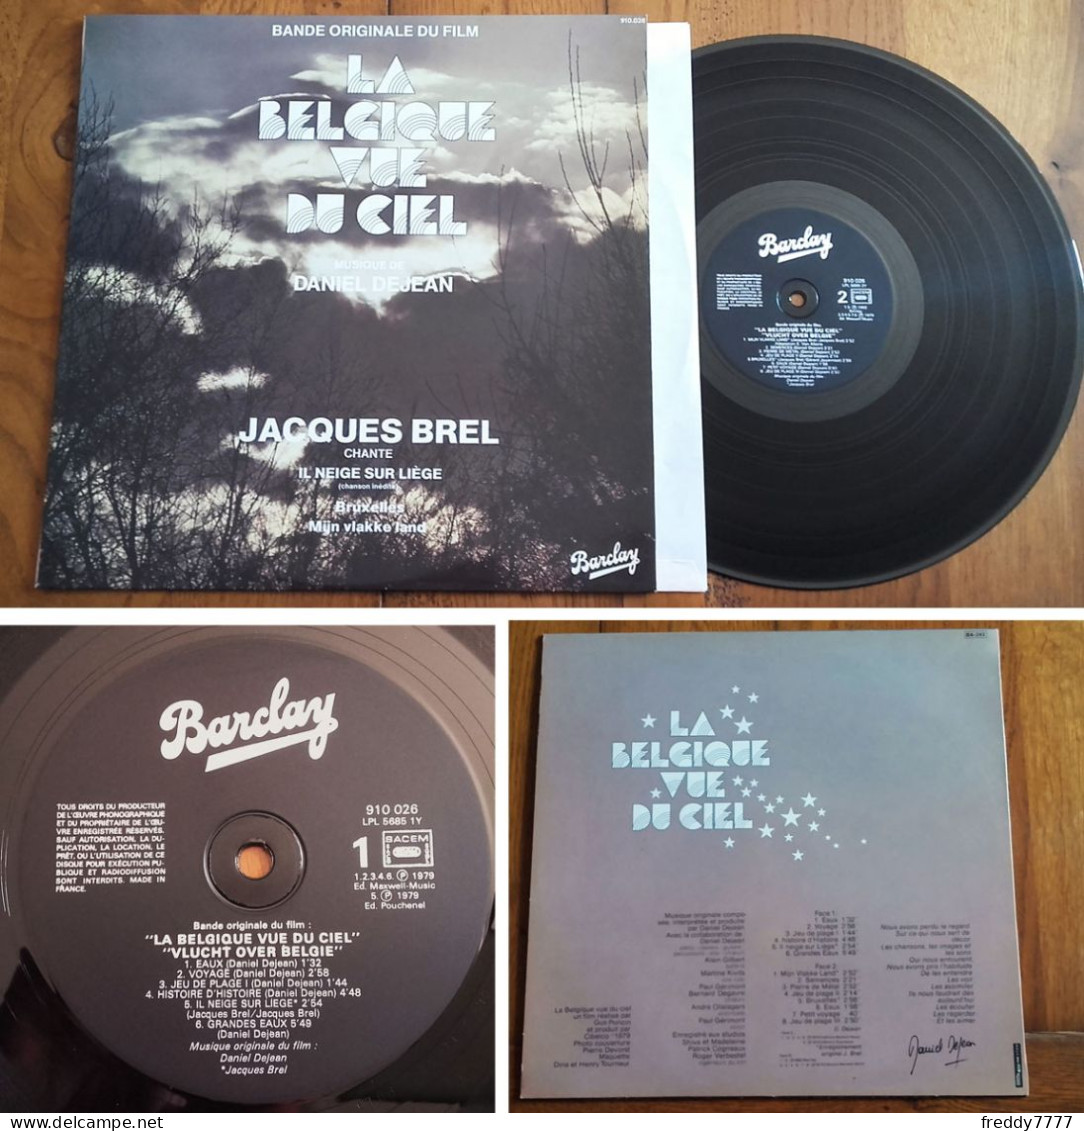 RARE French LP 33t RPM (12") BOF OST «LA BELGIQUE VUE DU CIEL» (Jacques Brel, 1980) - Soundtracks, Film Music